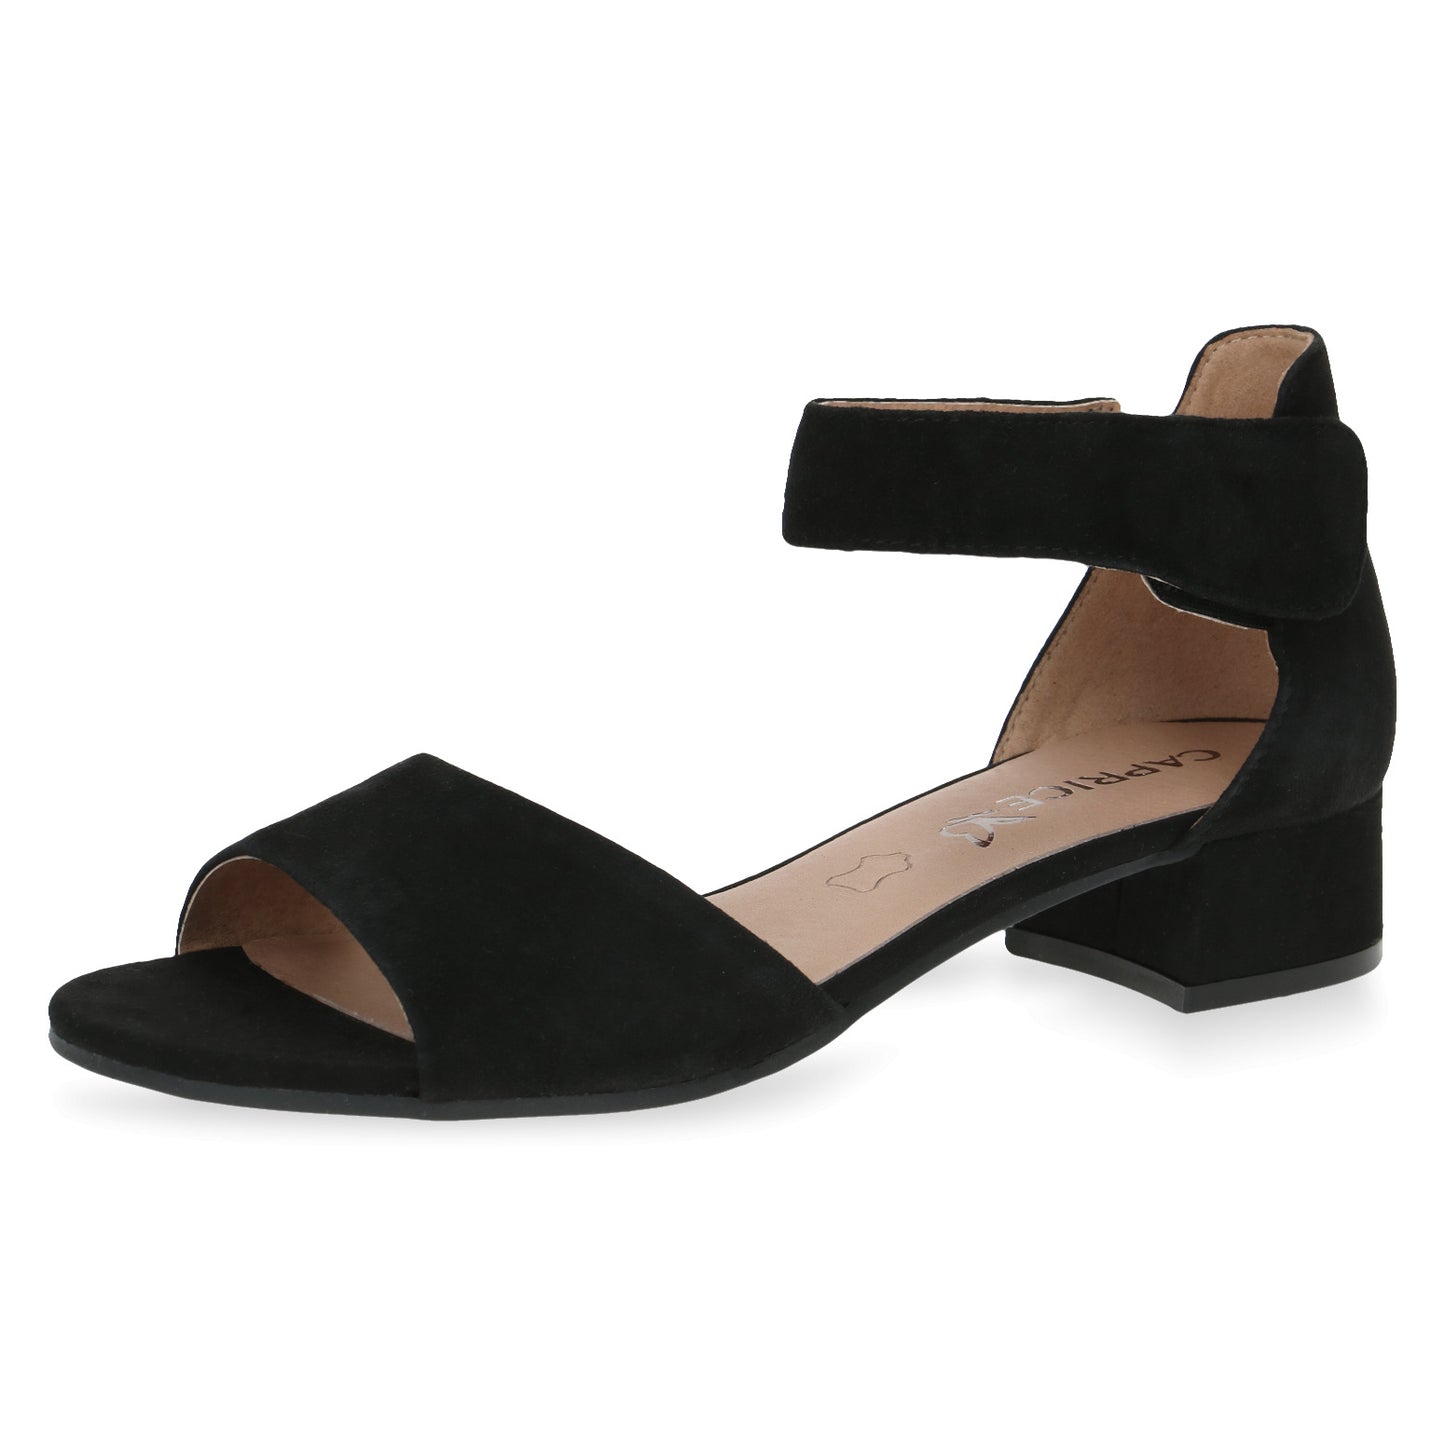 Caprice Women's 9-28212-42 Suede Leather Block Heel Sandals Black